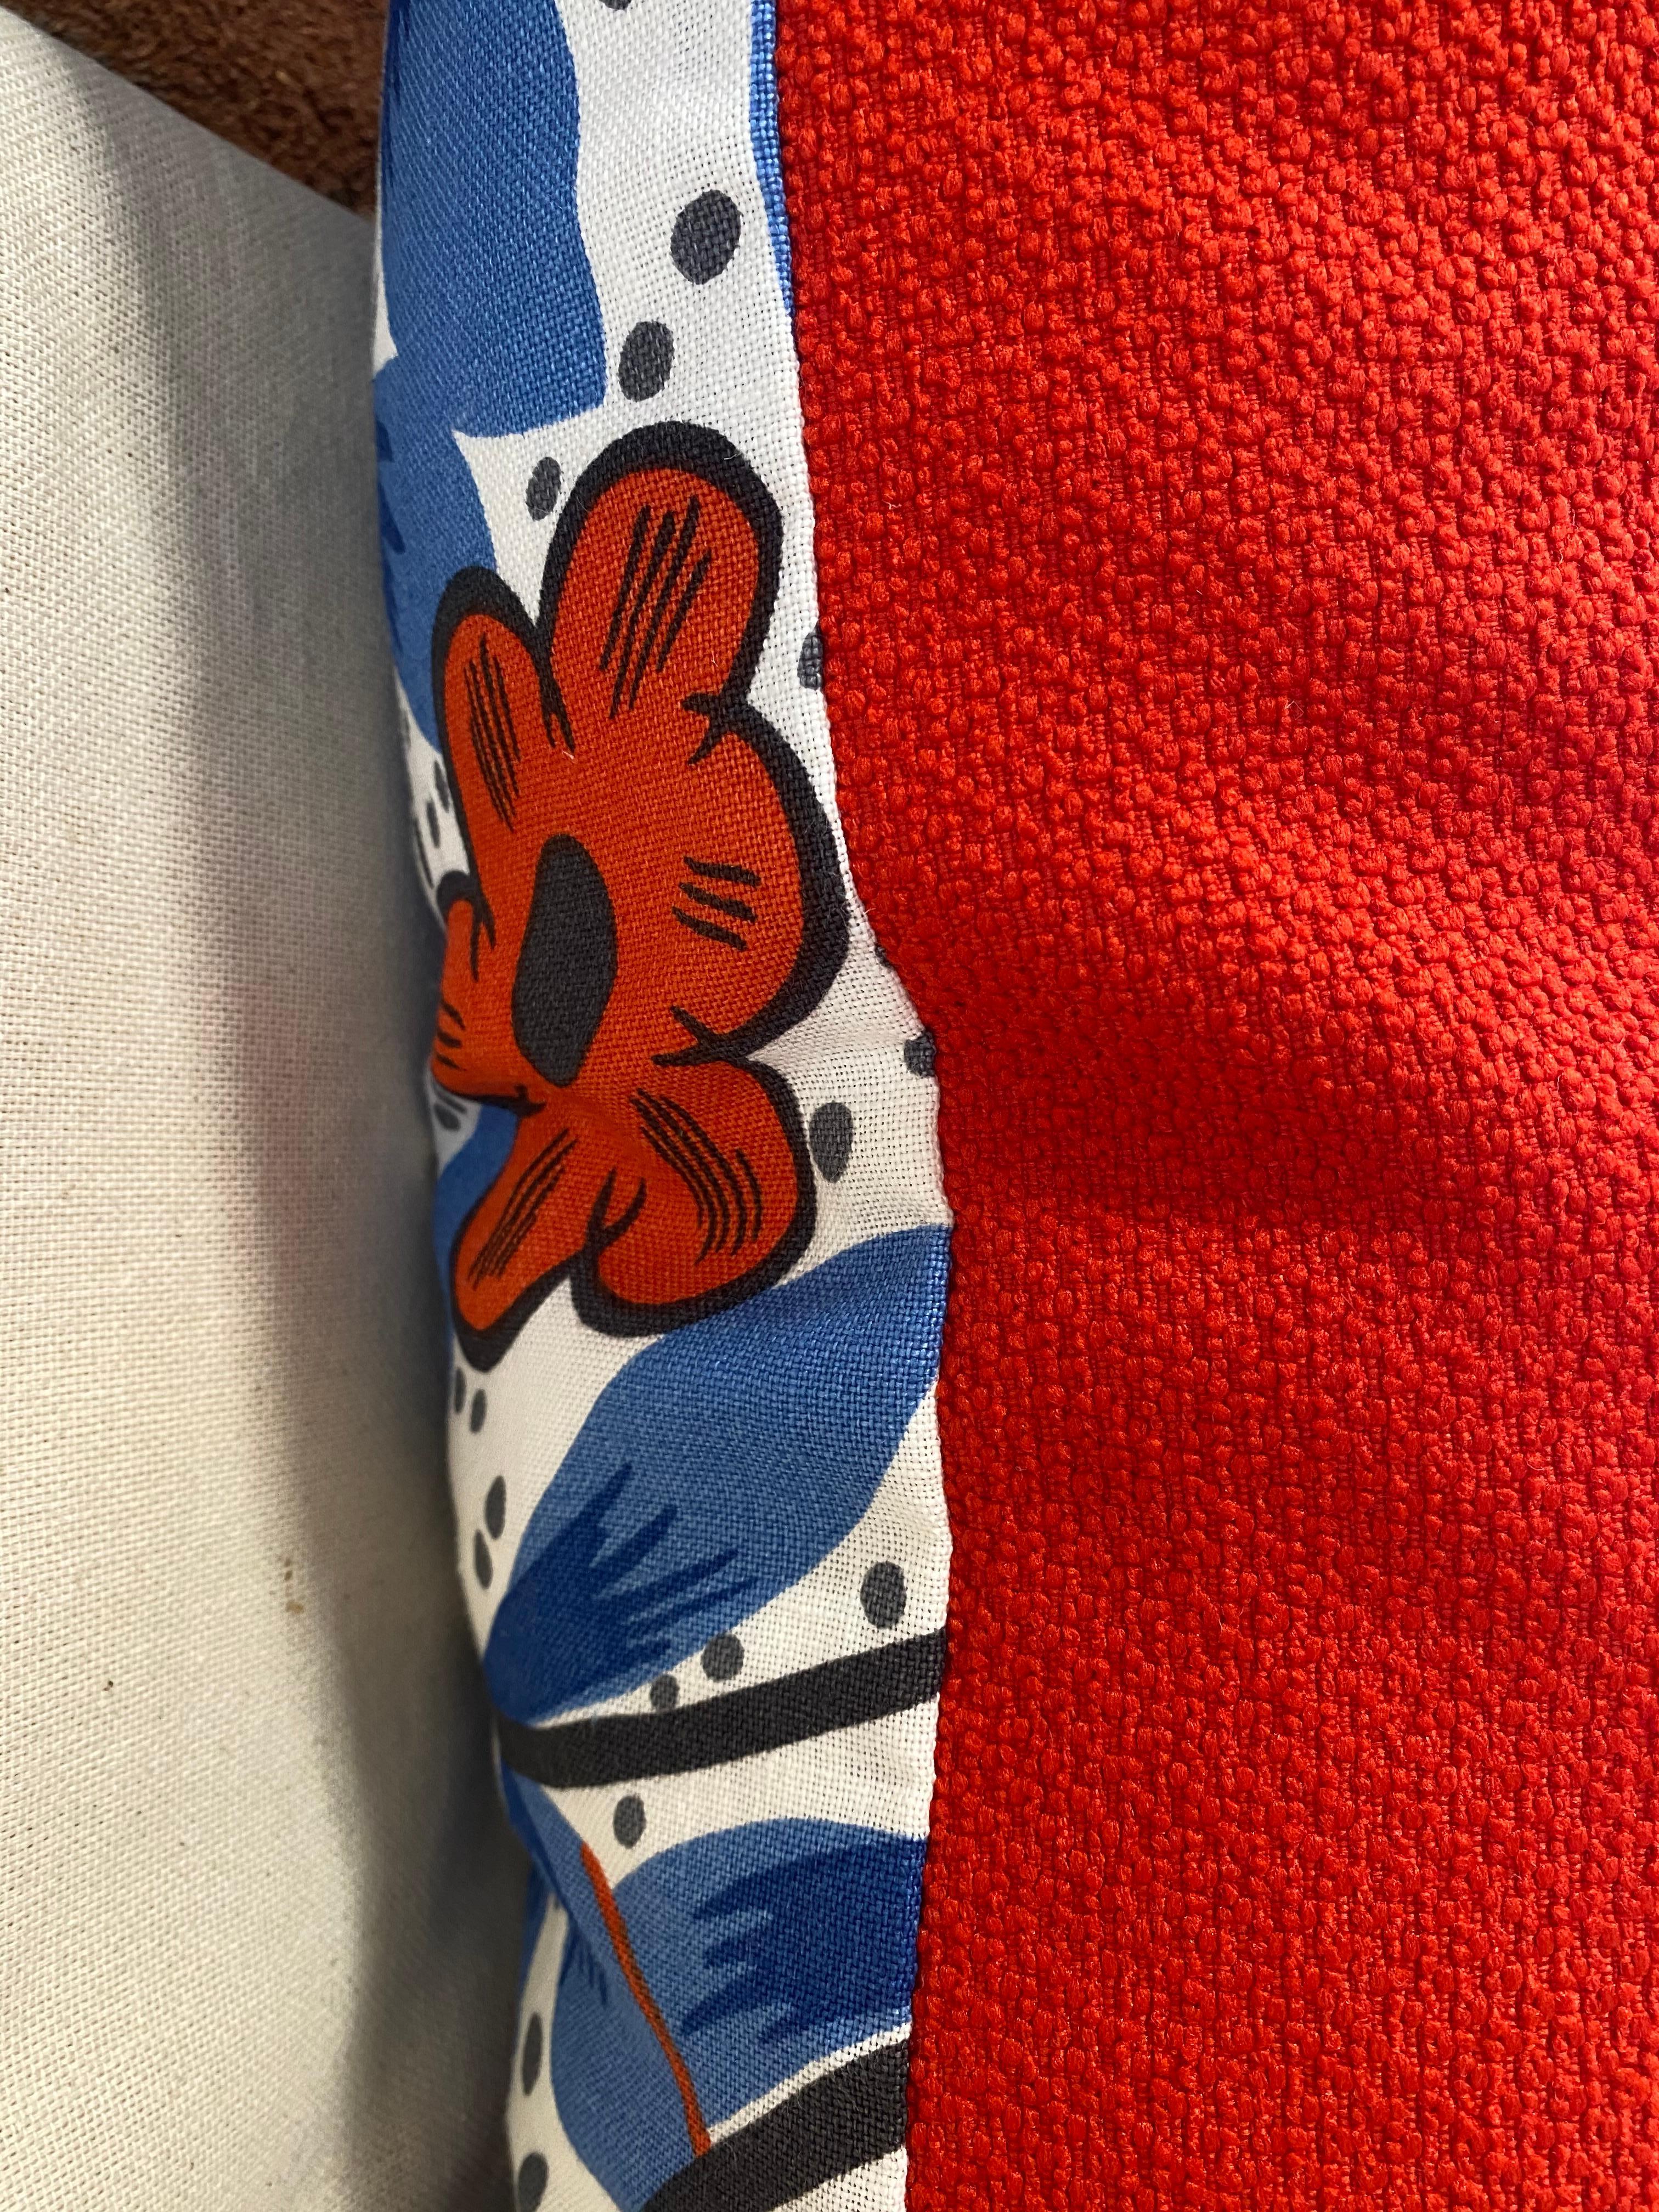 Américain Impression florale en coton rouge, blanc et bleu cobalt, mi-siècle moderne en vente